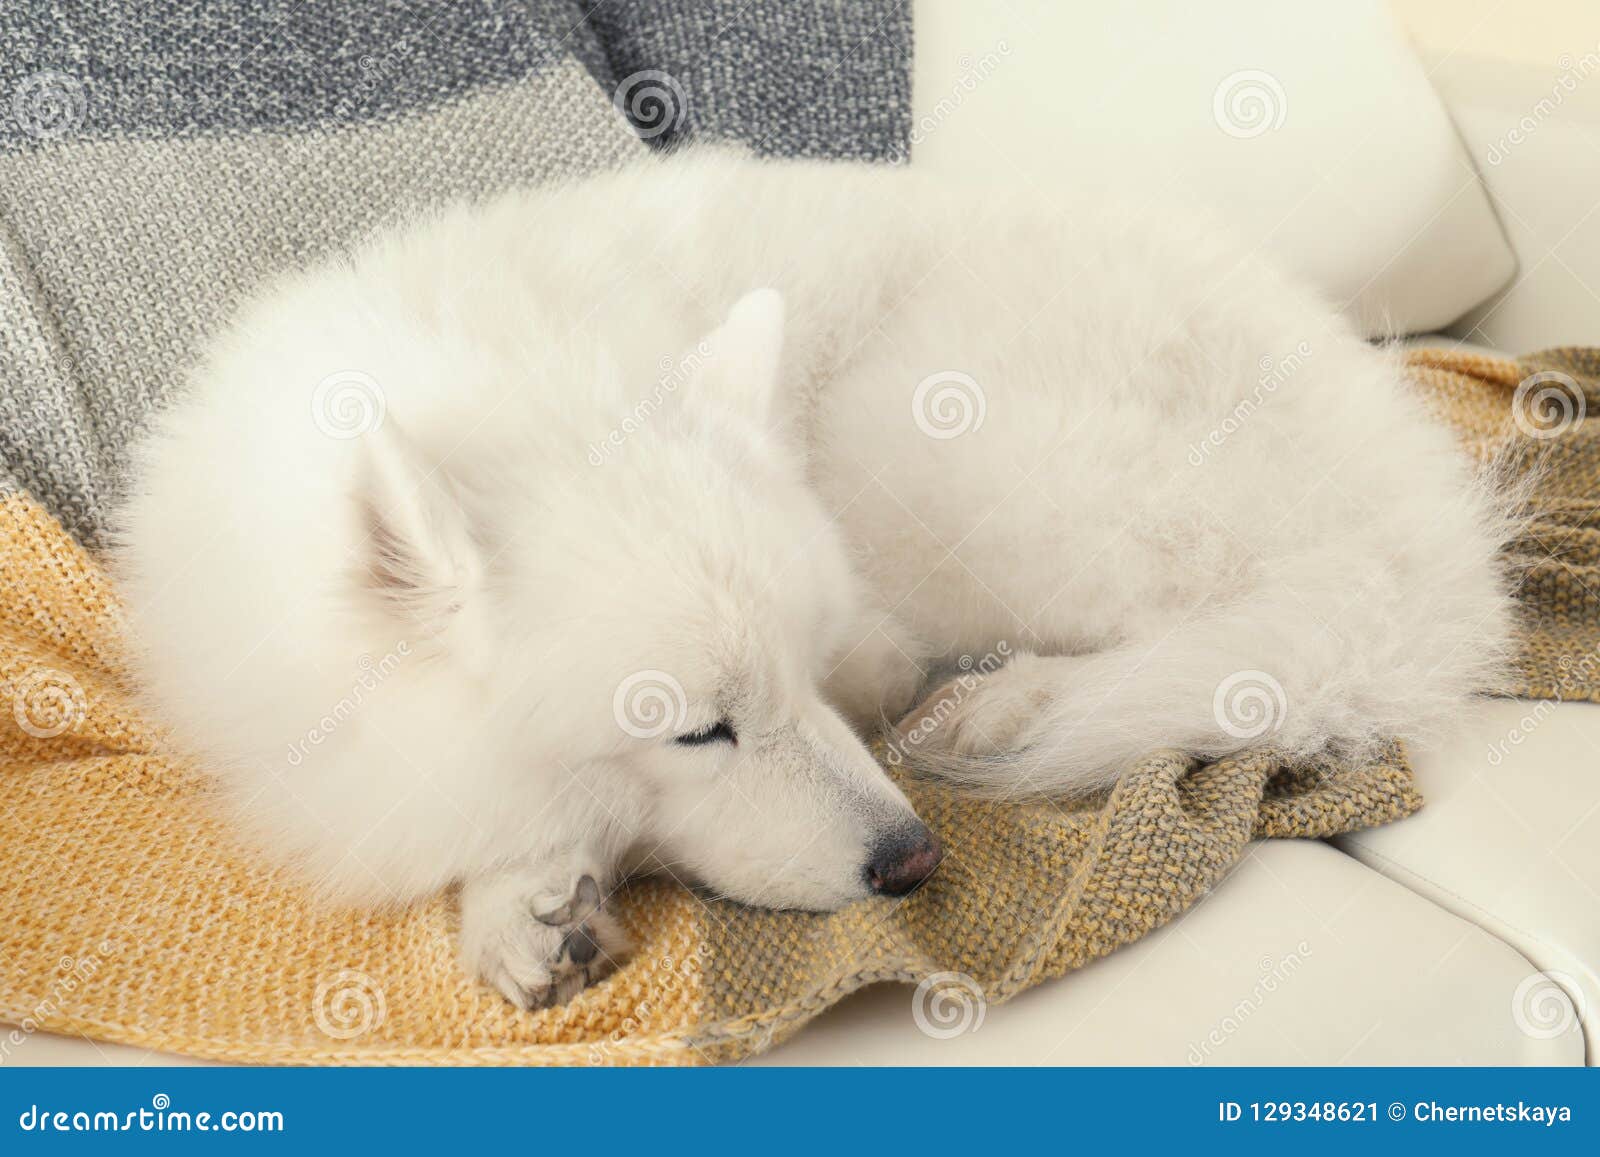 Adorable Samoyed Dog Sleeping Stock Image Image Of Background Doggy